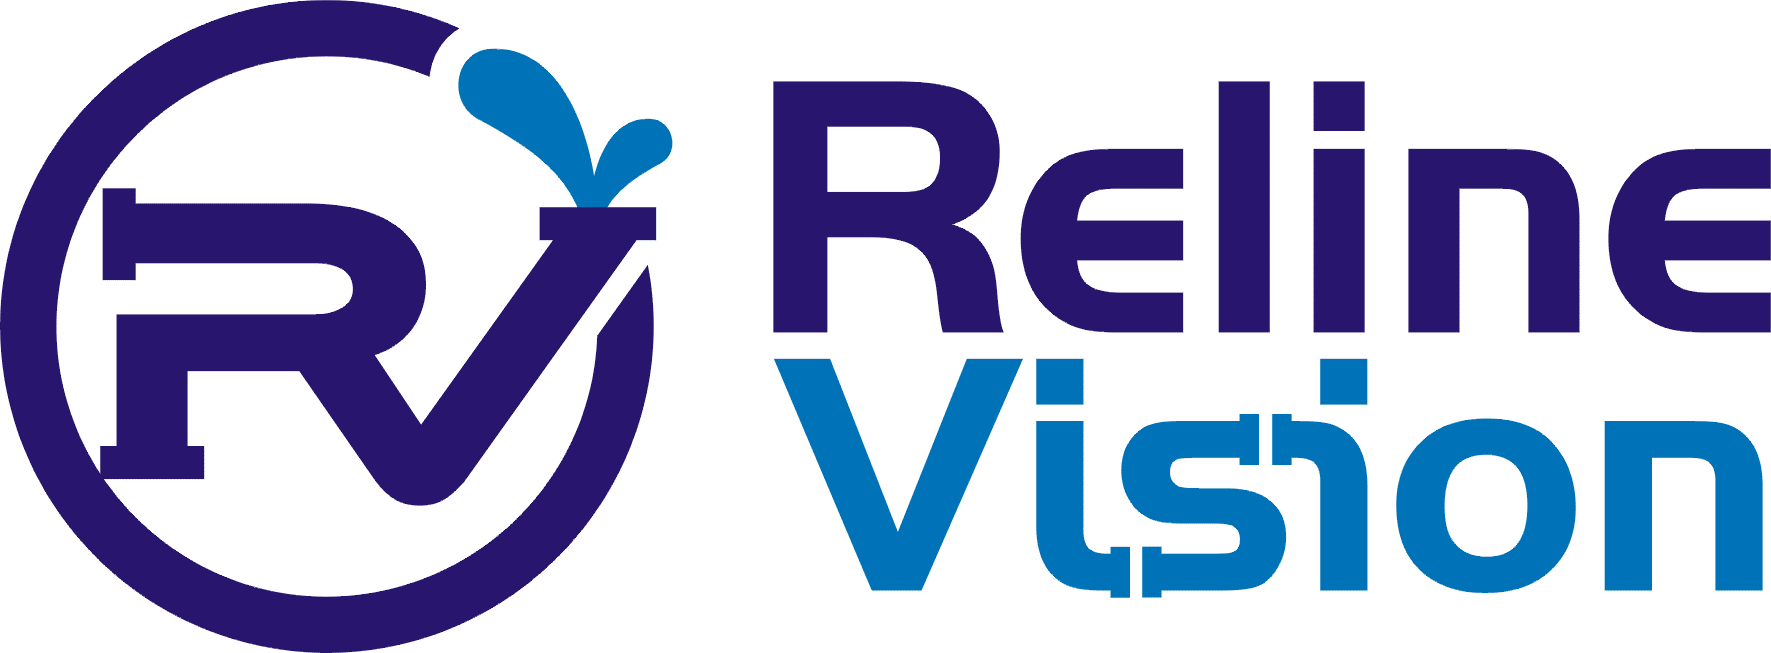 Reline Vision Logo Komplett - Mörkblå och ljusblå färger, med större bokstäver R och V till vänster. Omringar av en cirkel i mörkblå. Till höger står Reline Vision i två rader med Reline i mörkblått och Vision i ljusblått.